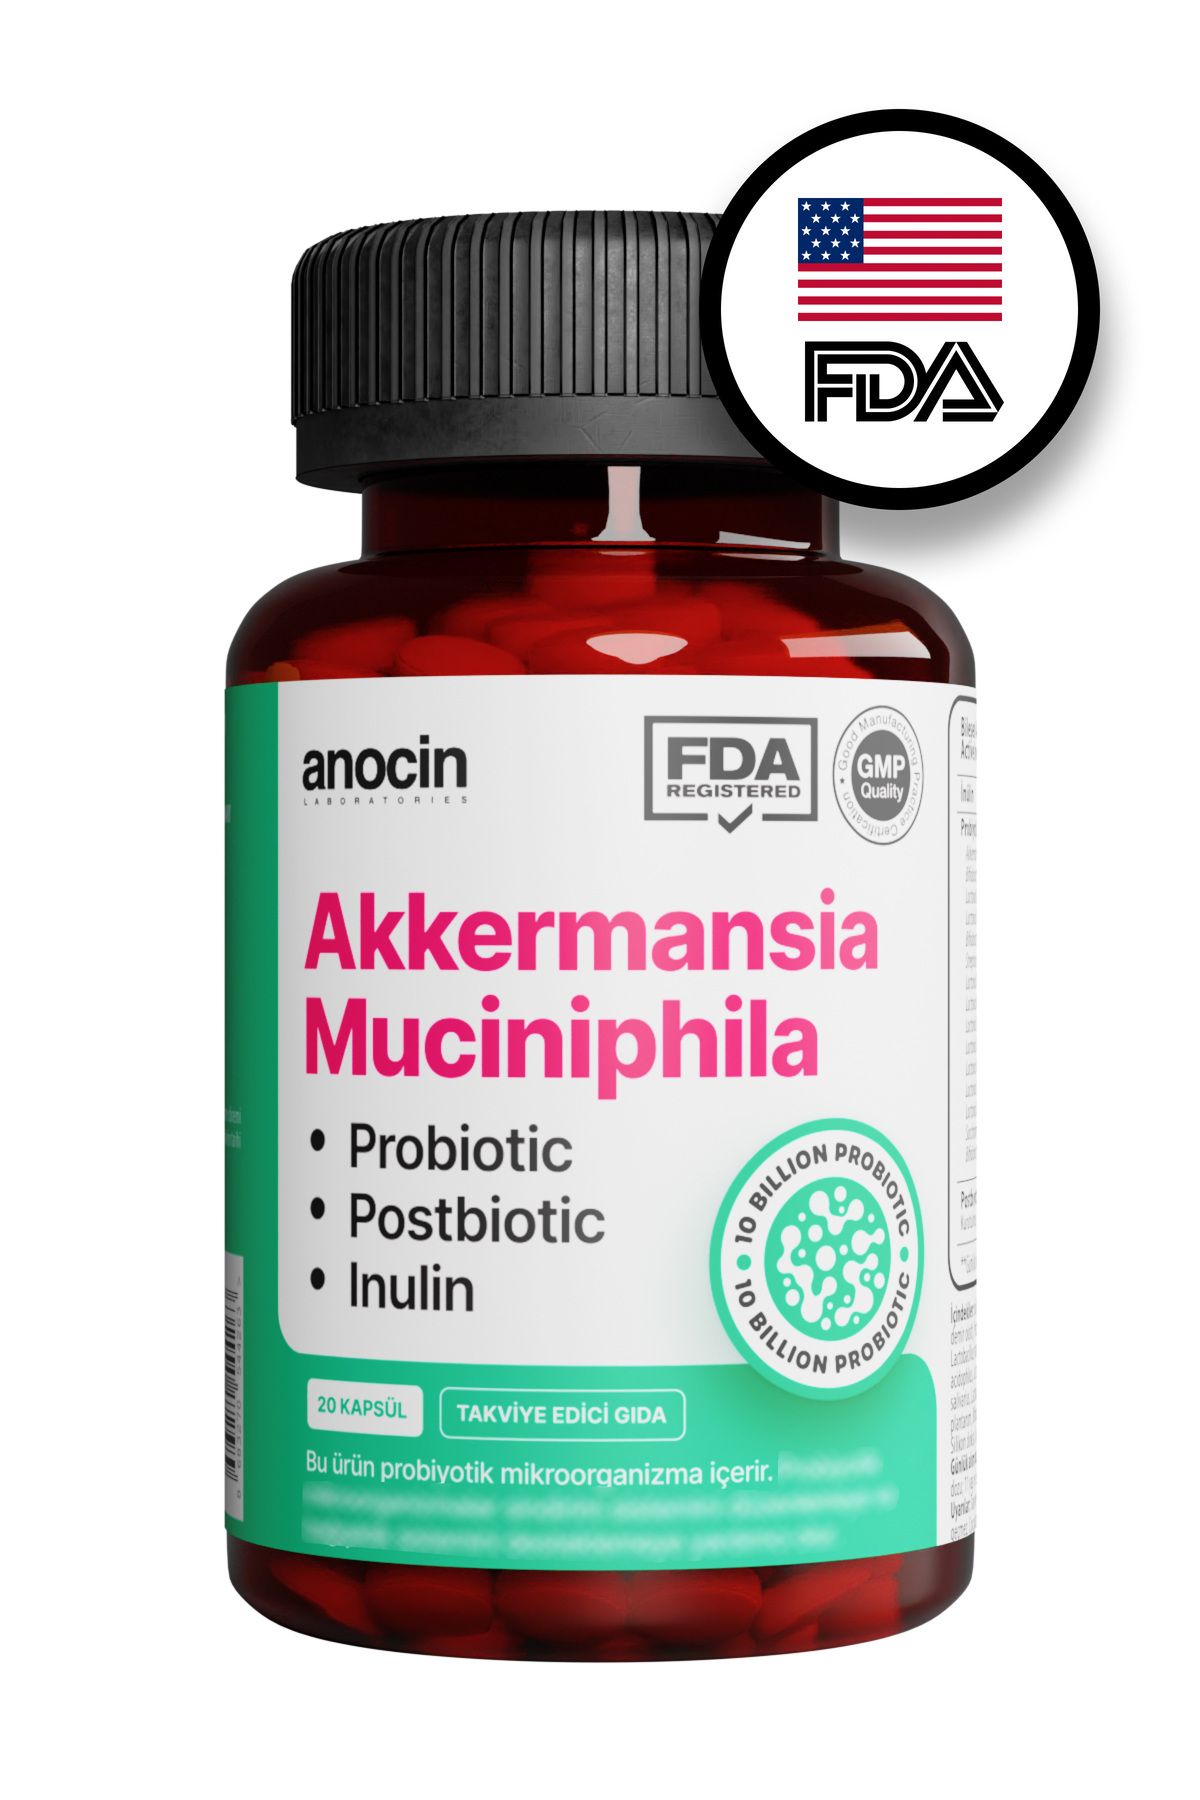 anocin Akkermansia Muciniphila Probiyotik + Prebiyotik + Postbiyotik + inulin . x6 kat daha çok akkermansia